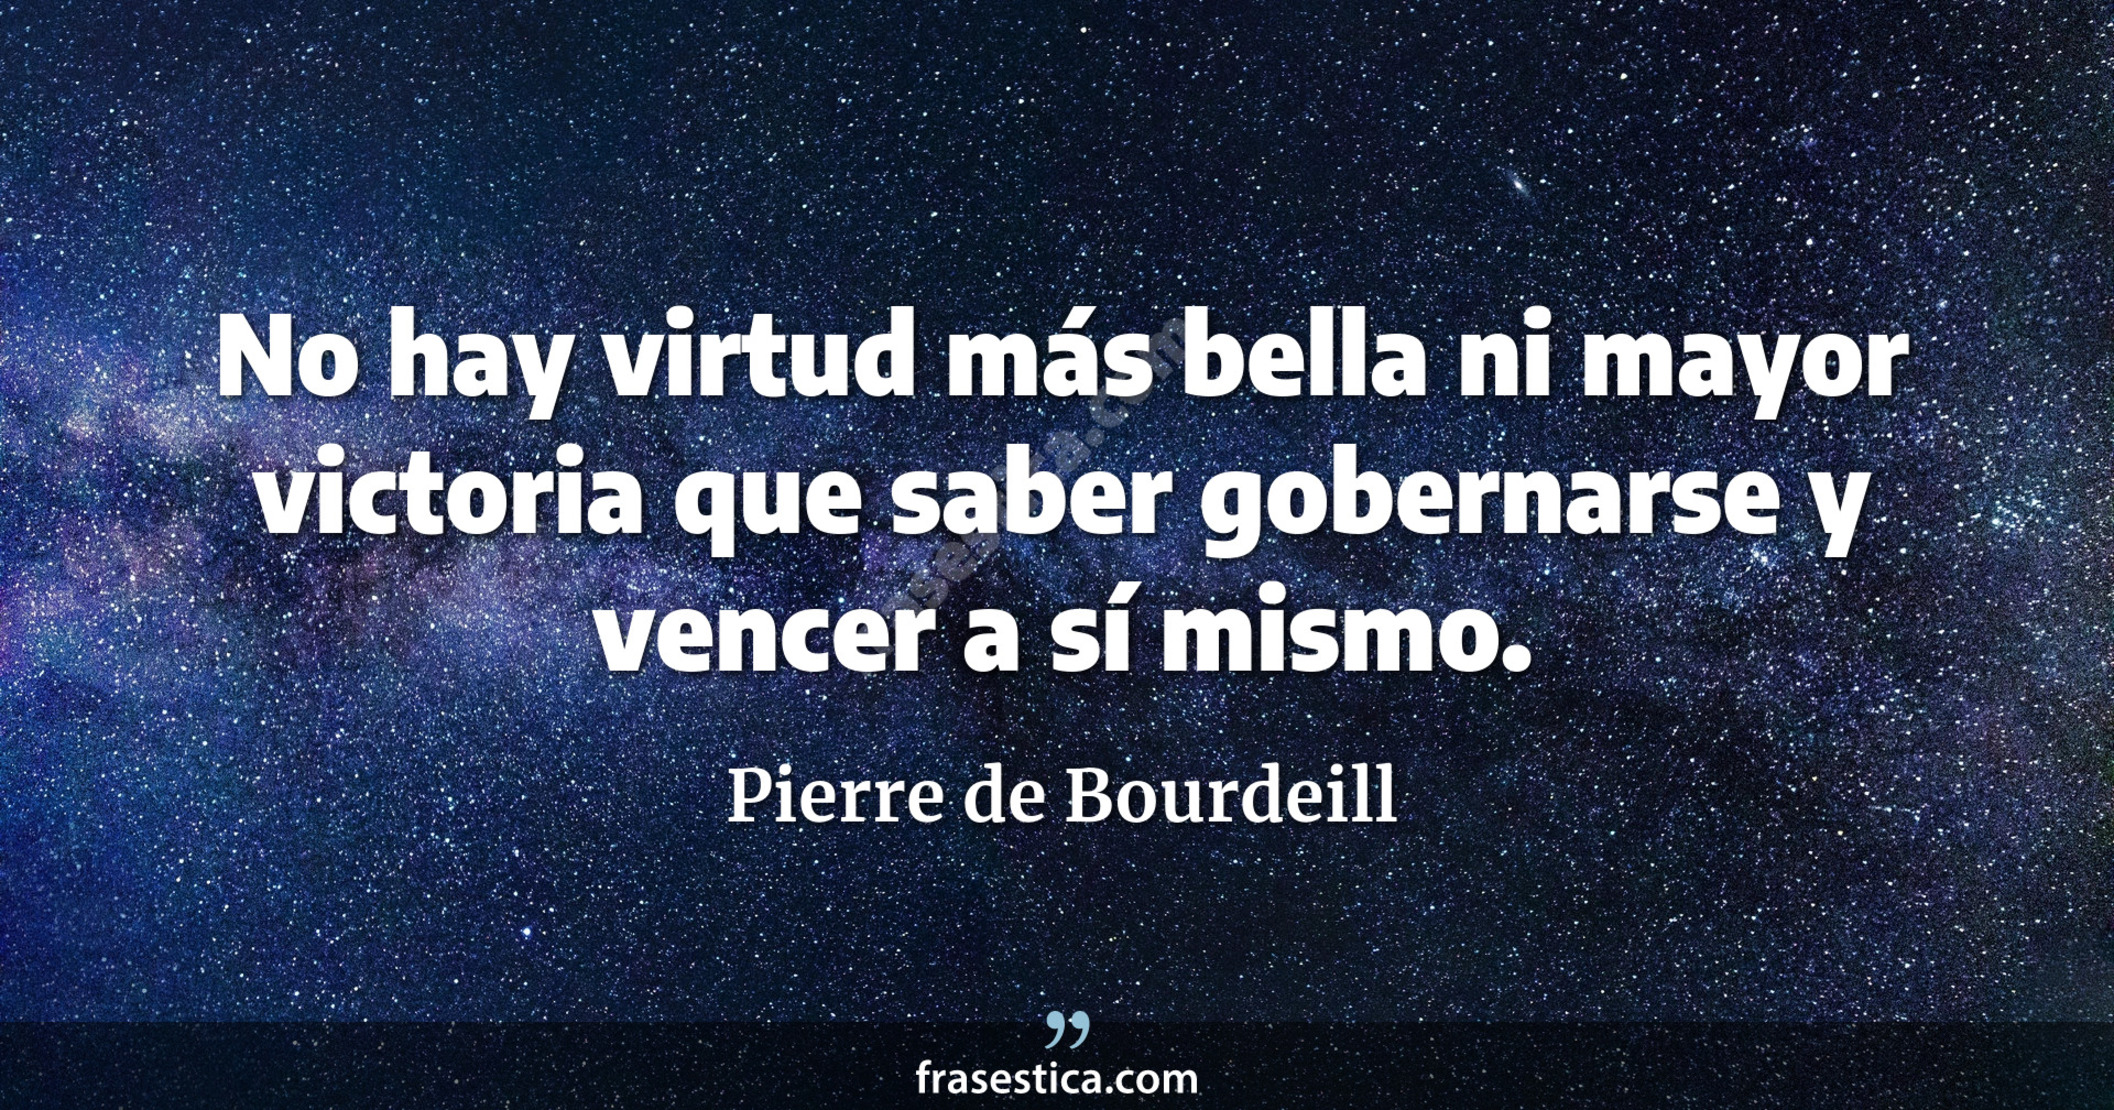 No hay virtud más bella ni mayor victoria que saber gobernarse y vencer a sí mismo. - Pierre de Bourdeill